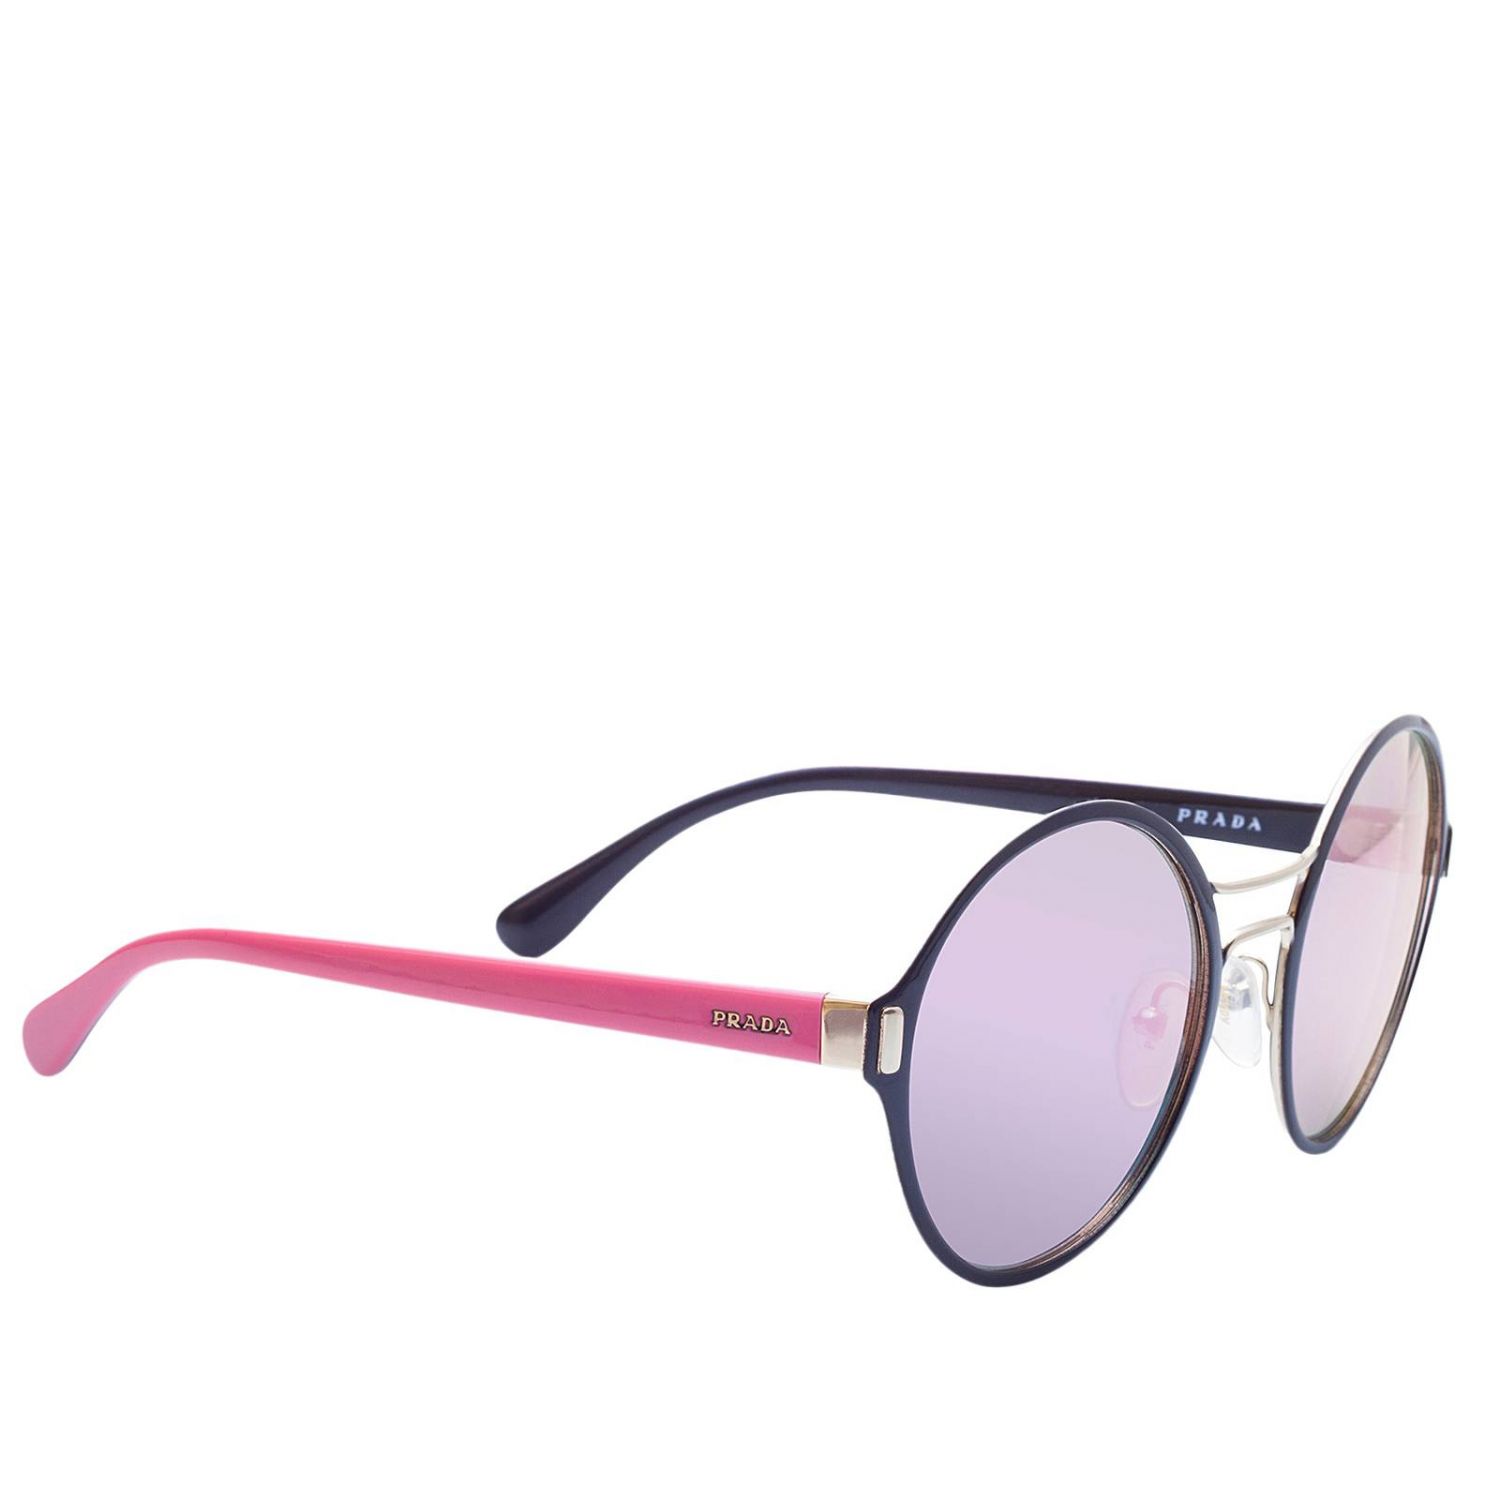 prada sunglasses women pink